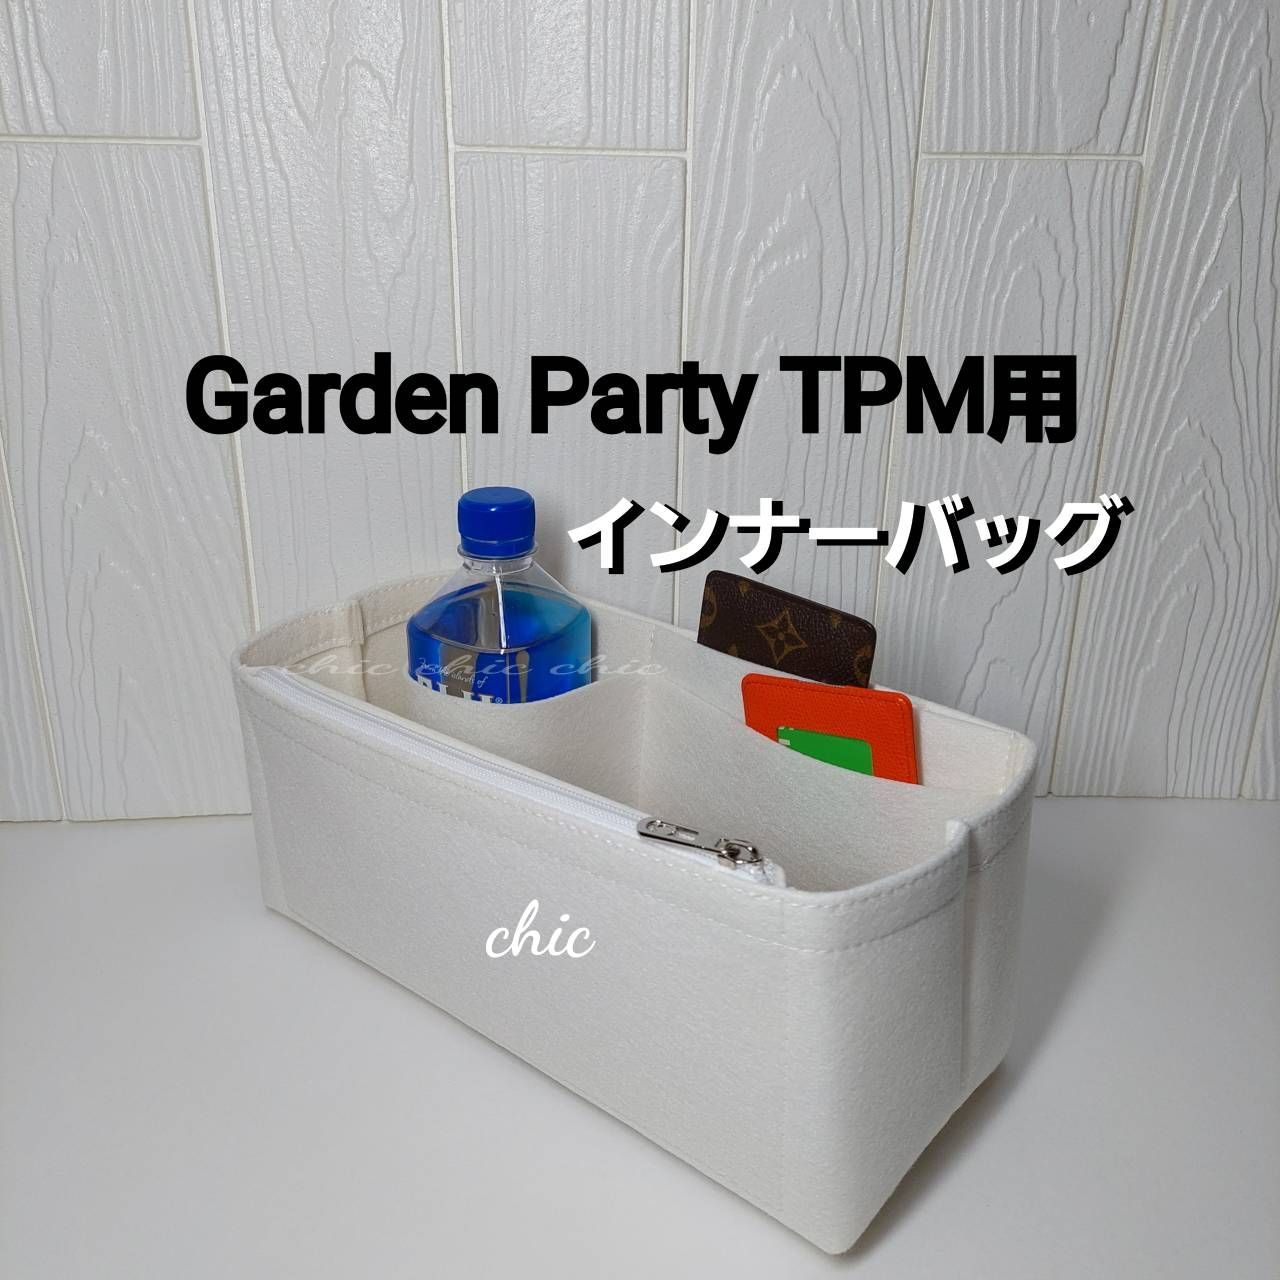 卓抜 ガーデンパーティ garden party インナーバッグ バッグインバッグ